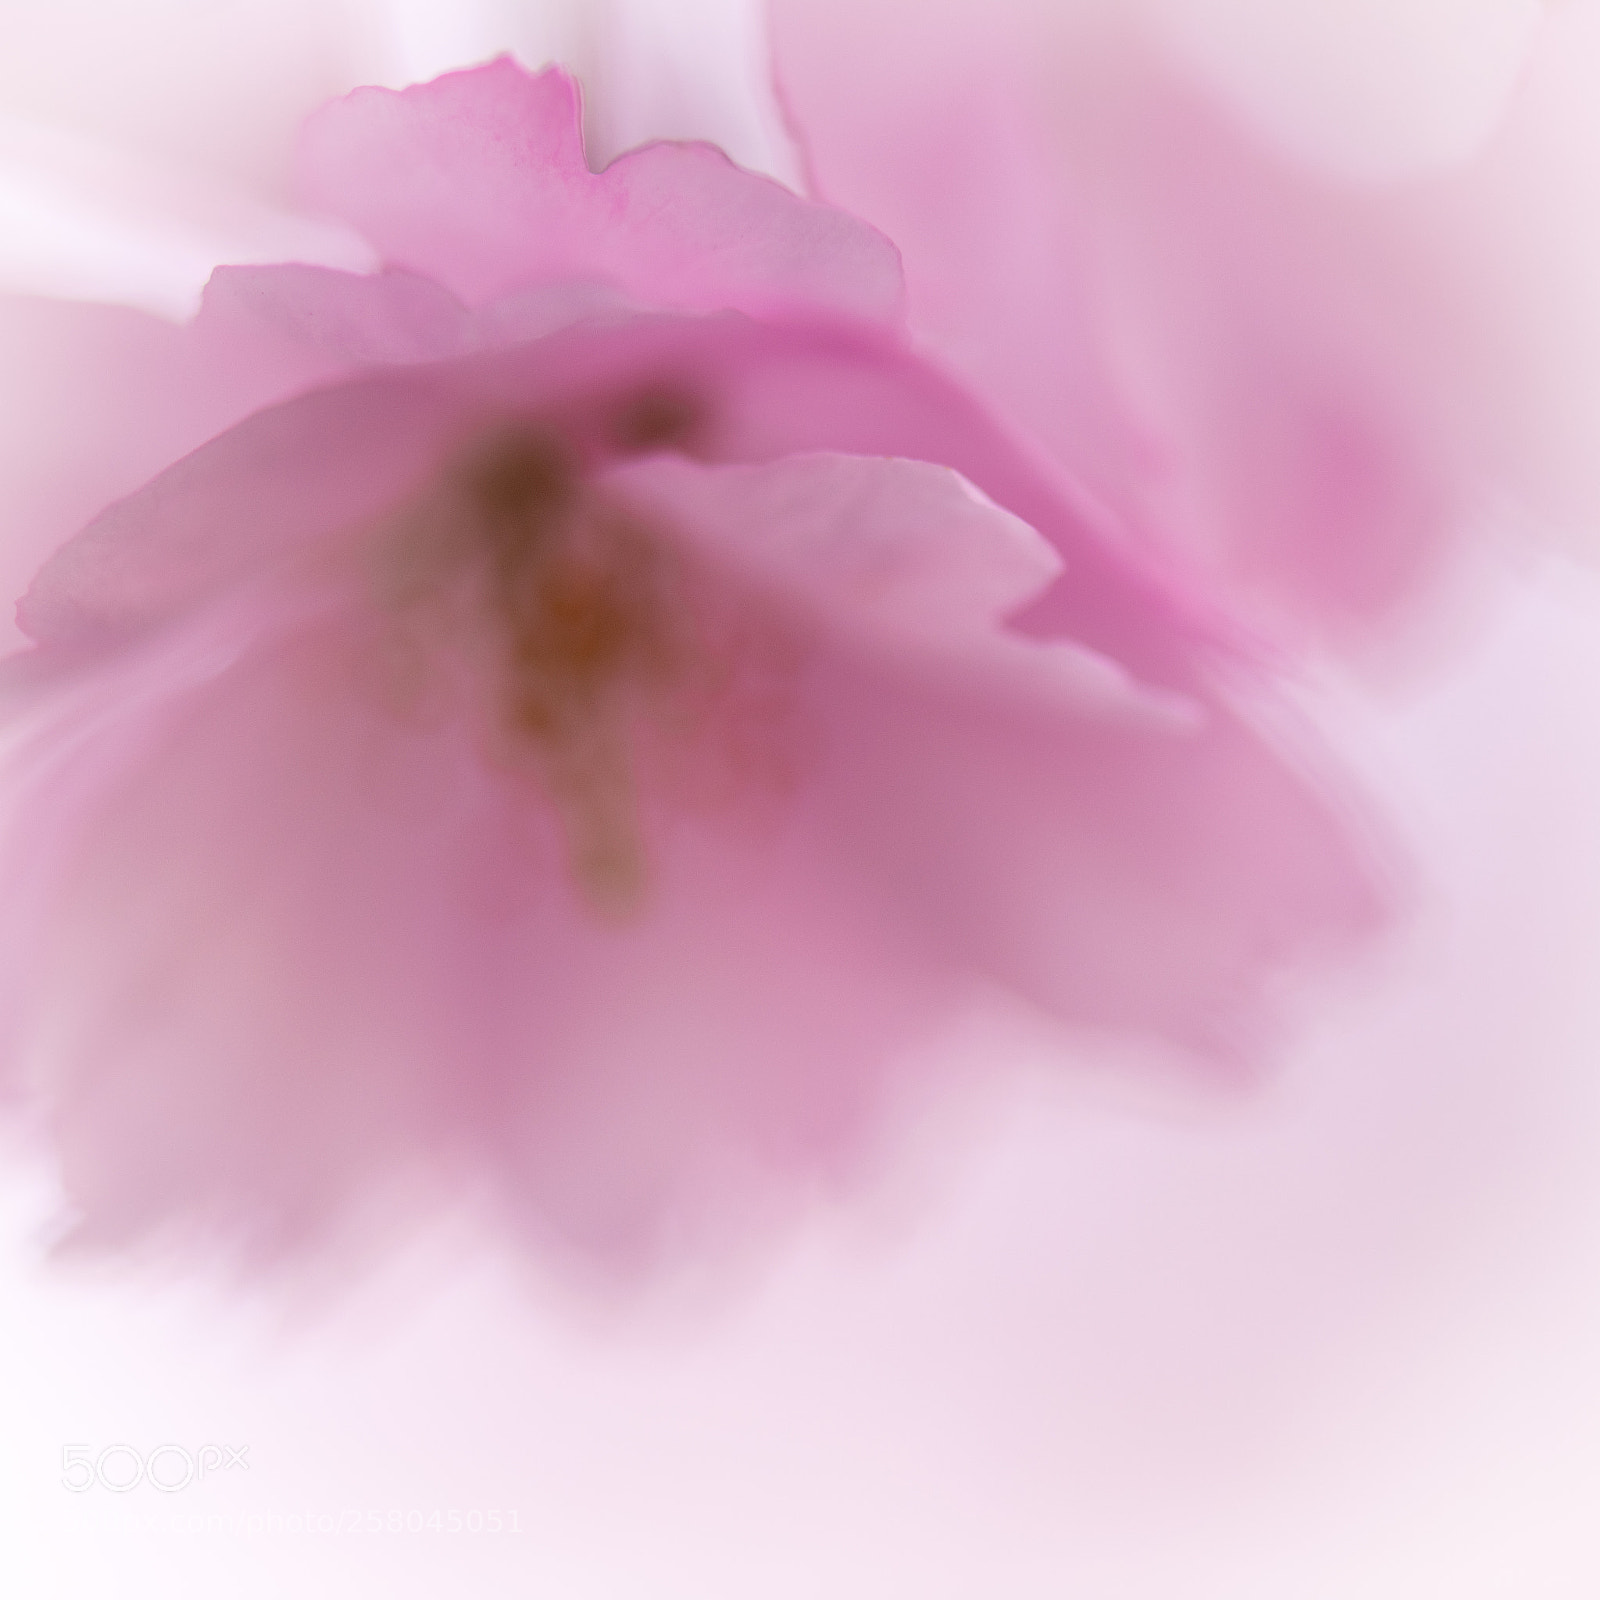 Nikon D850 sample photo. Pink petals photography